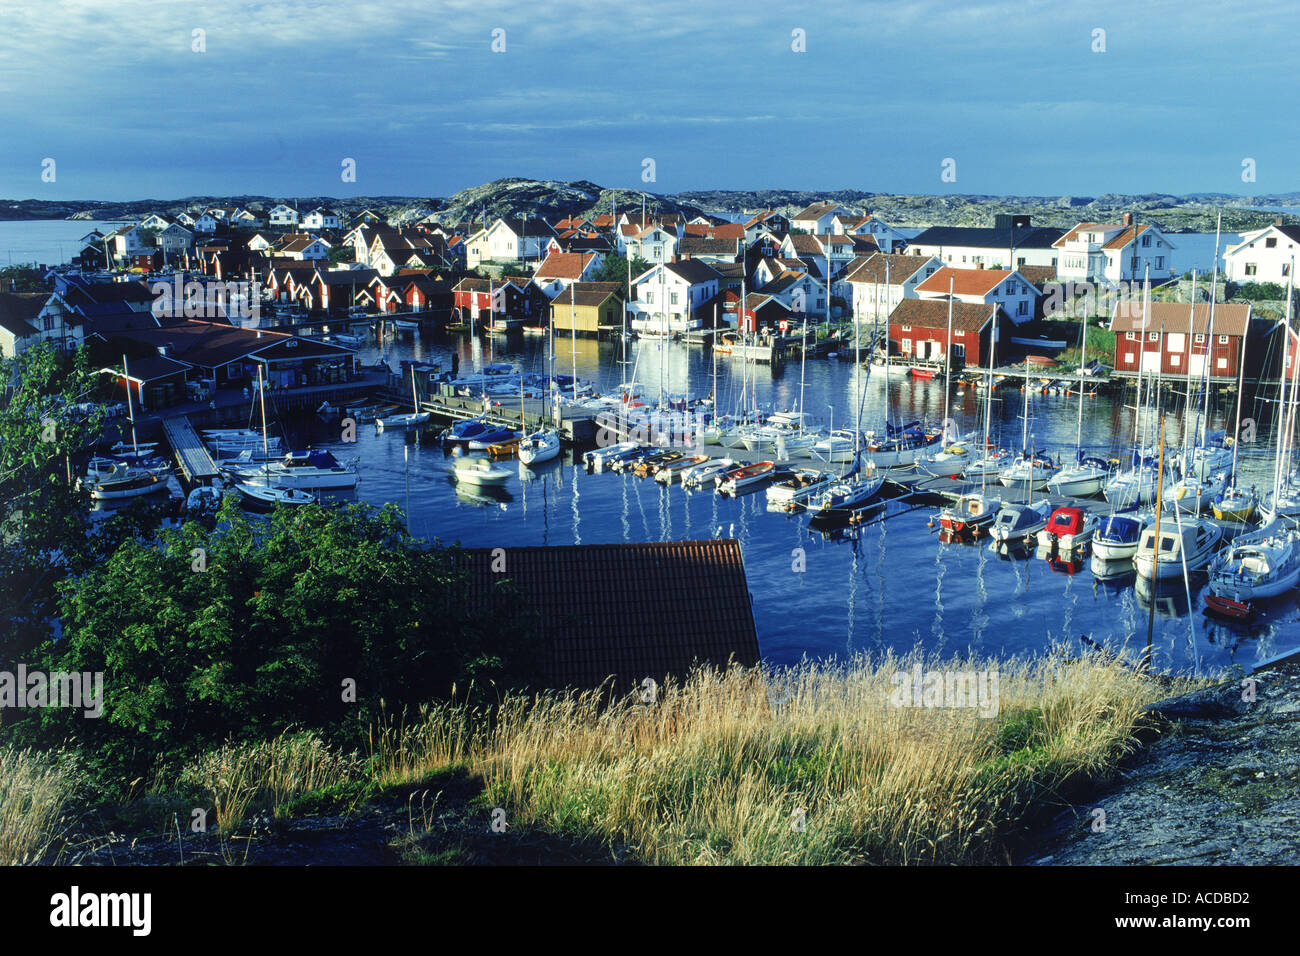 Petit port rempli de bateaux, yachts, et maisons colorées sur île de Gullholmen dans Bohuslän sur la côte ouest de la Suède Banque D'Images